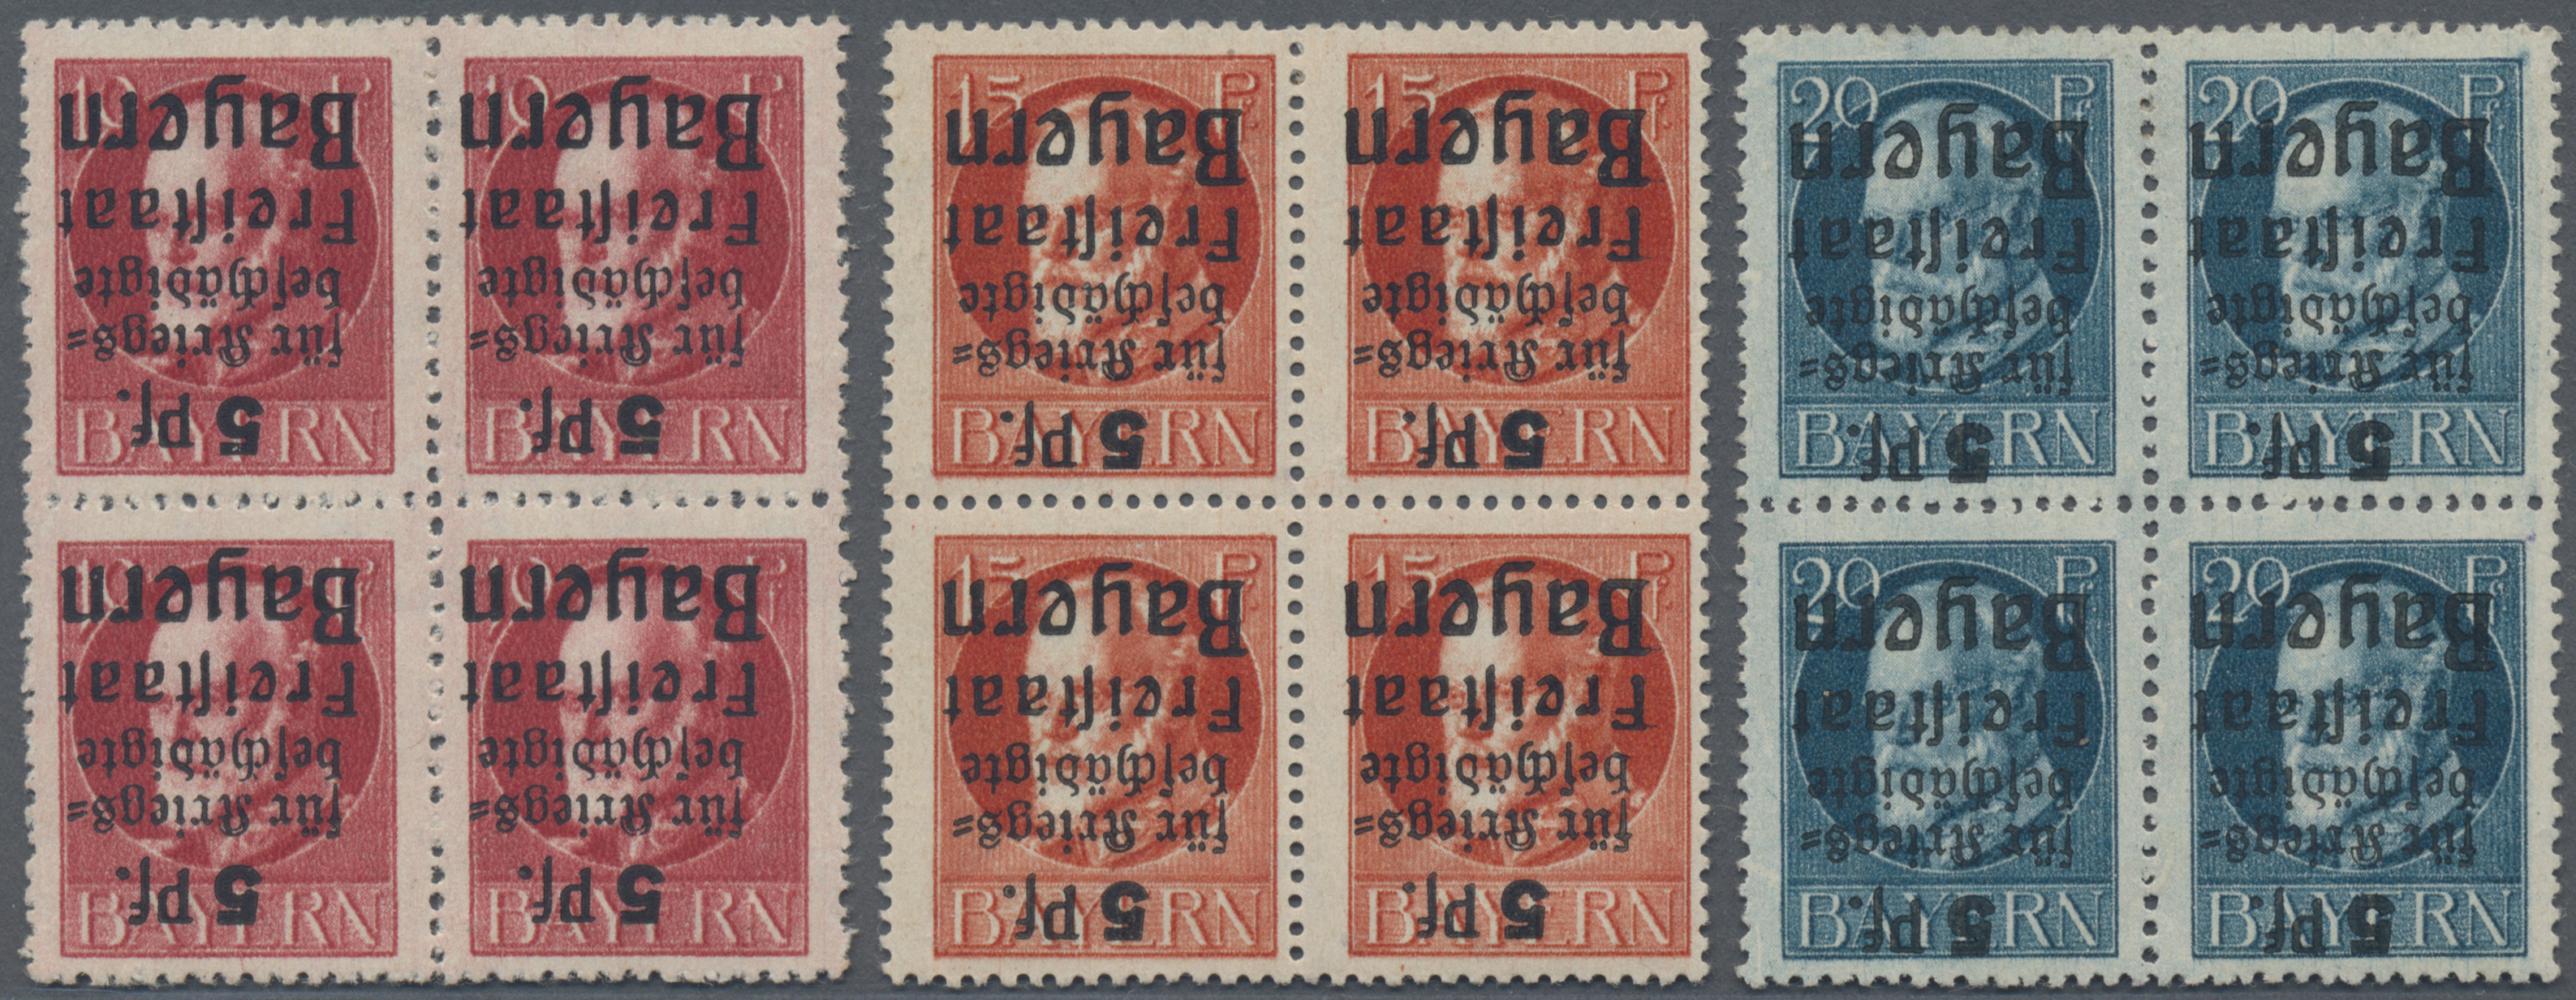 Stamp Auction - Bayern - Marken und Briefe - Sale #45 - GERMANY , lot 16191